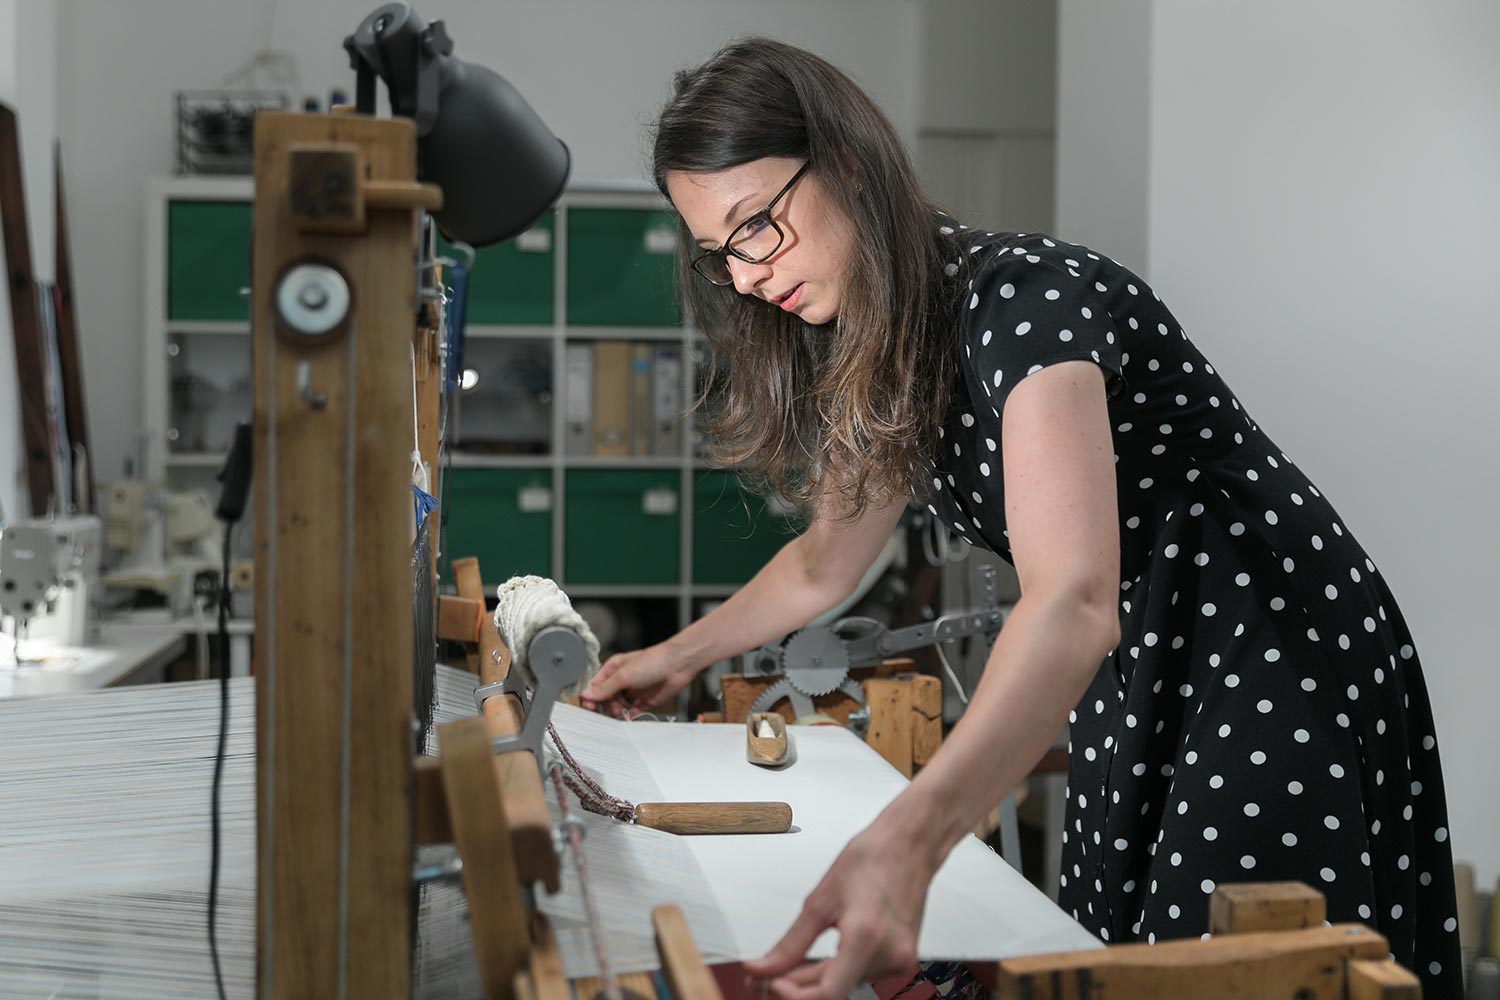 Krisztina Vandor is weaving at her studio in a polka dot dress